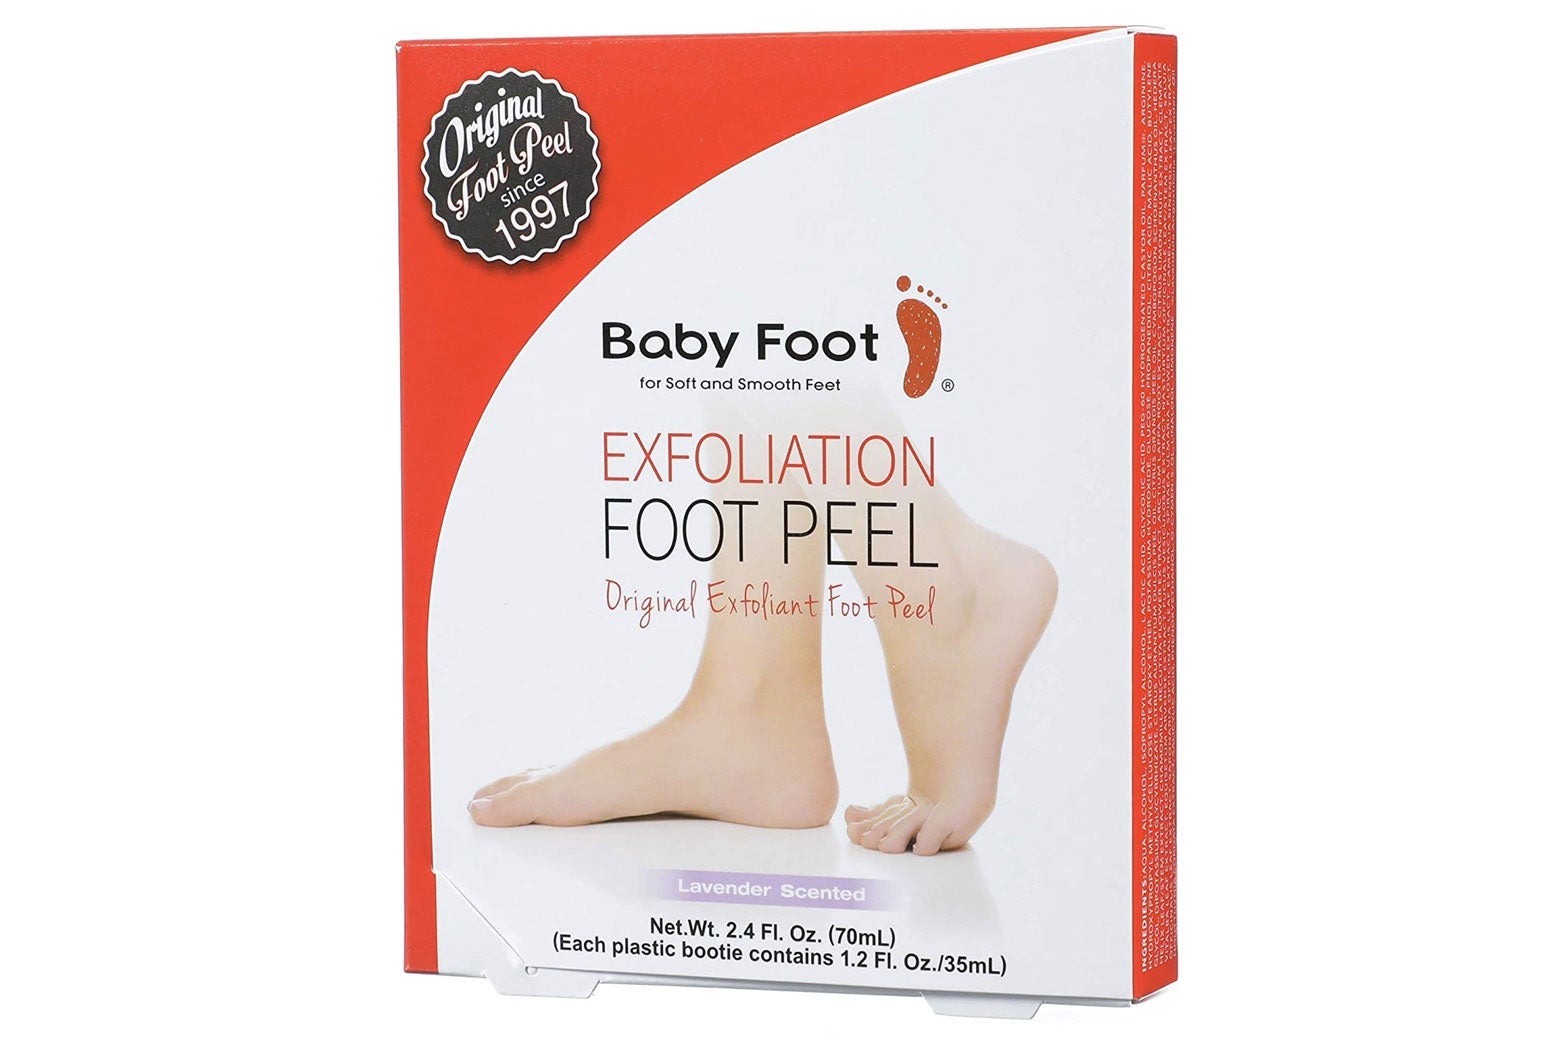 Foot peel box